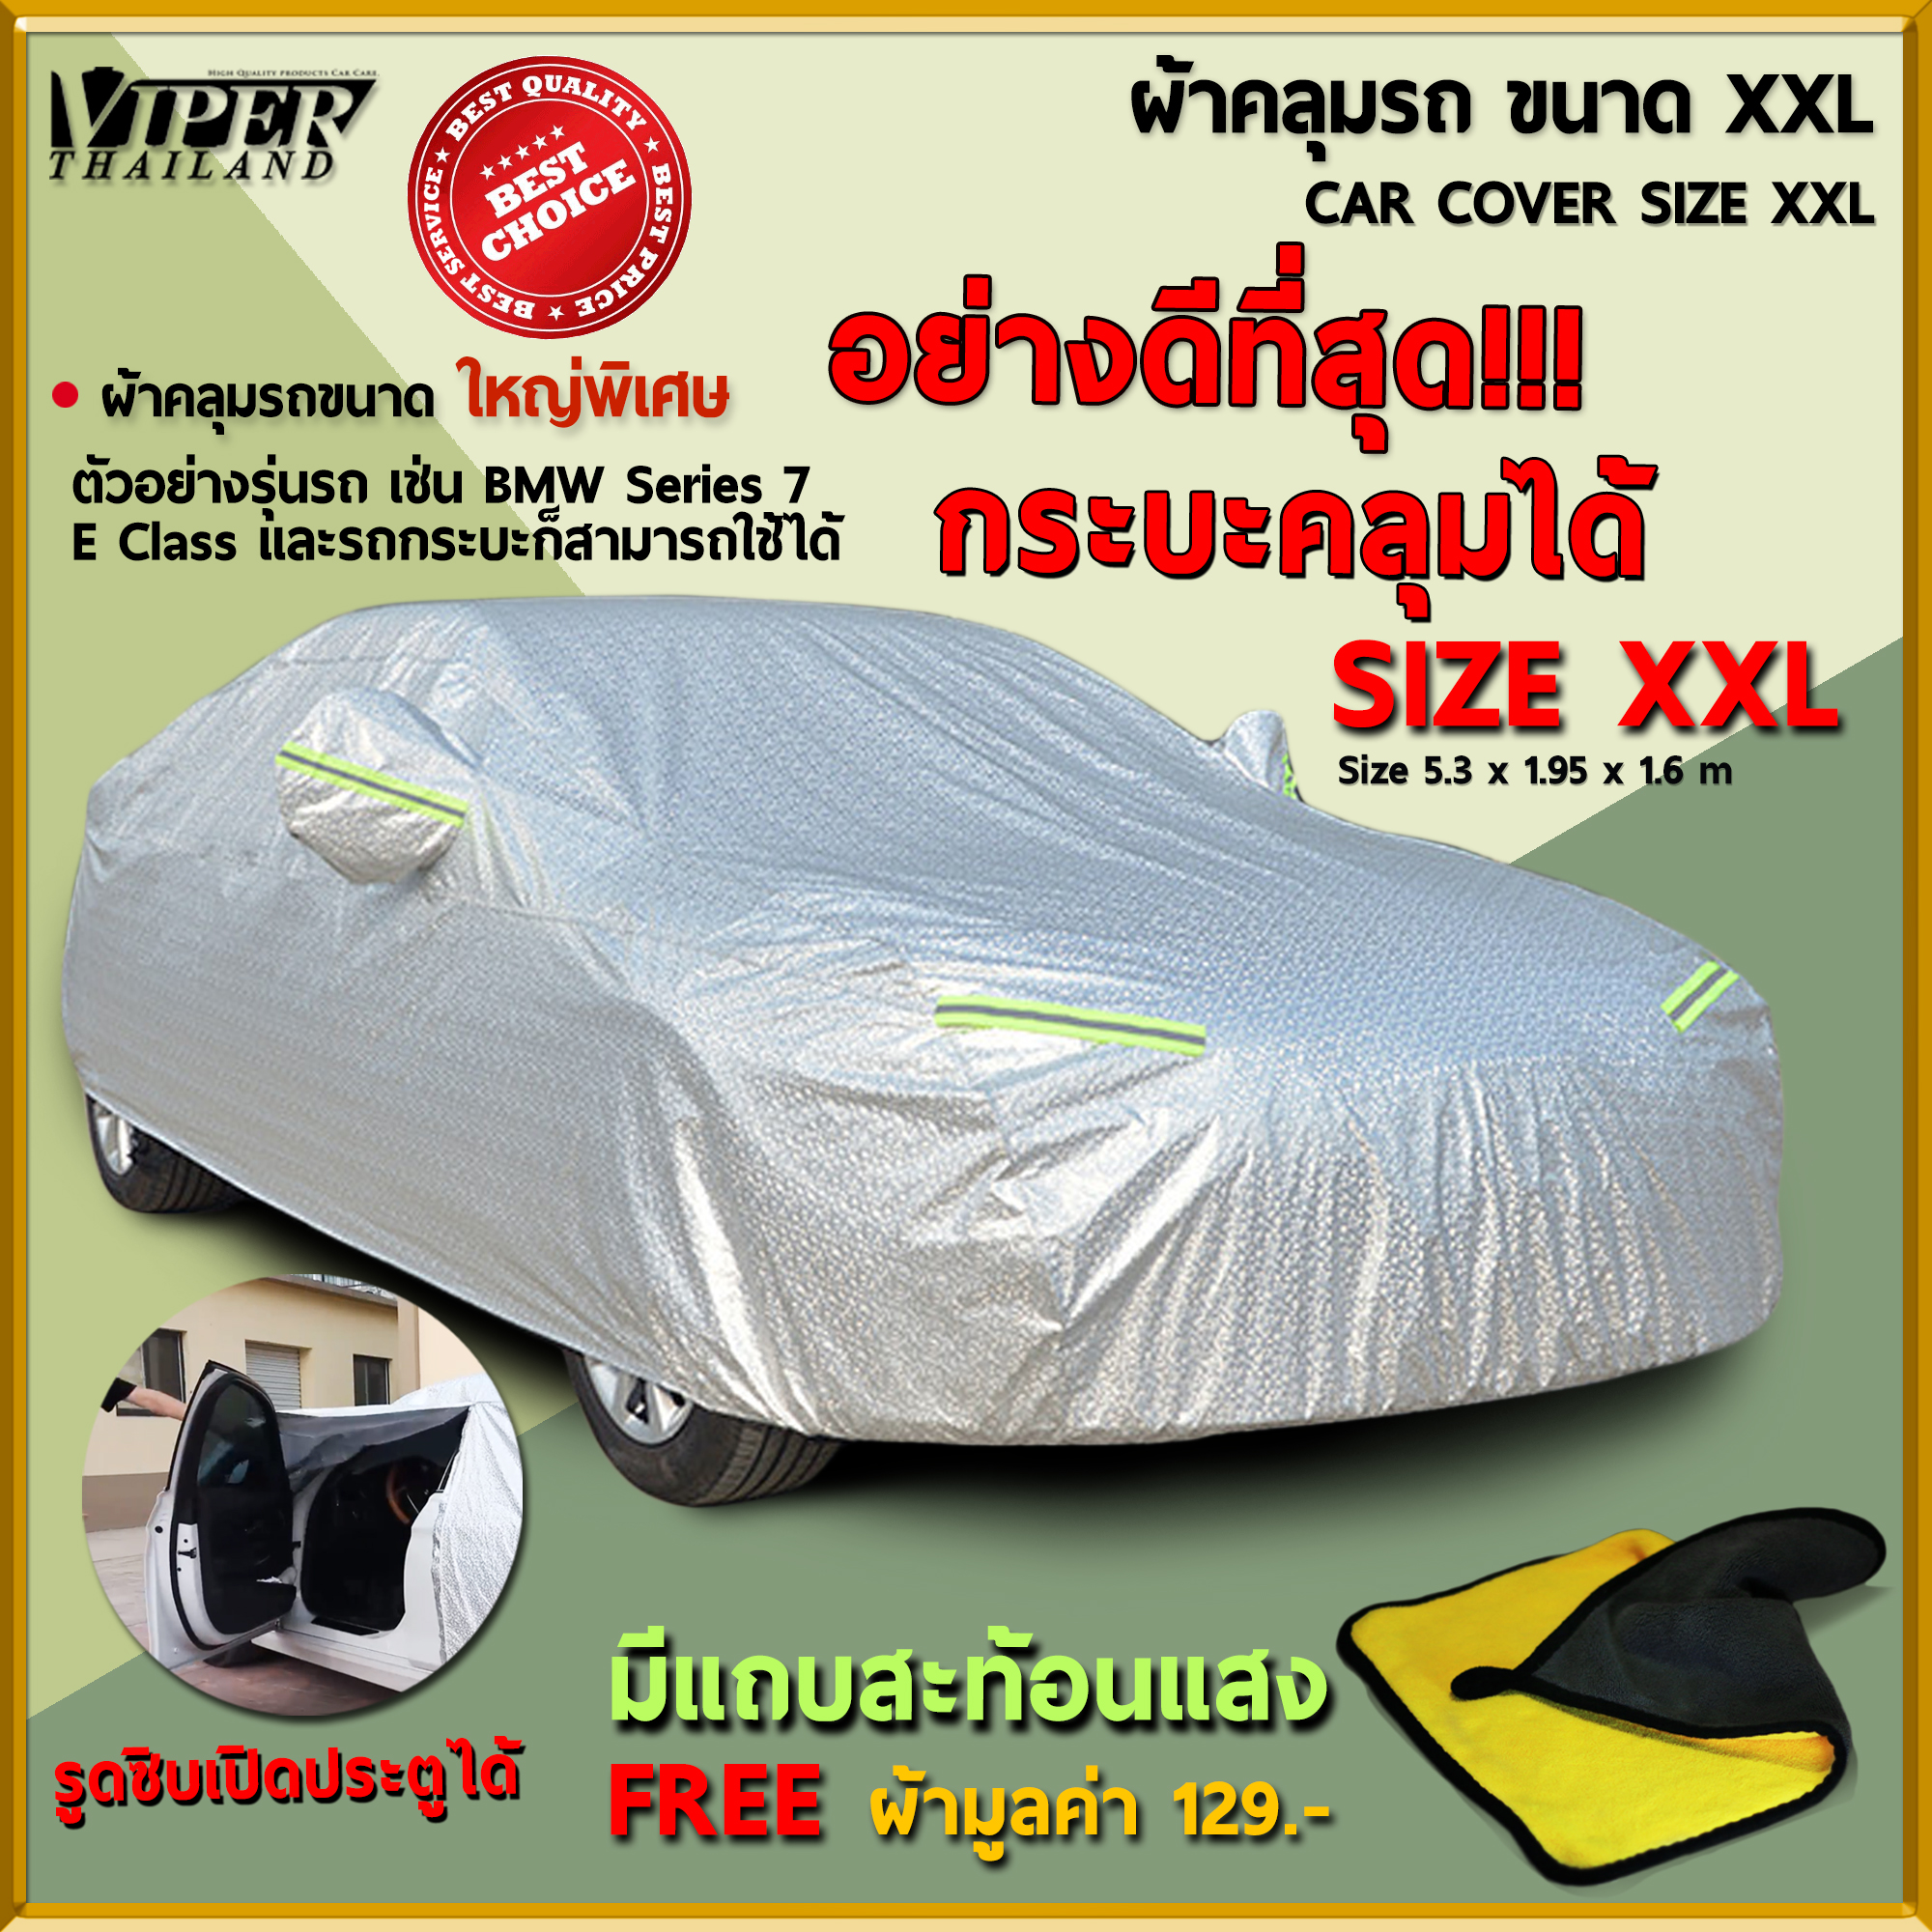 ผ้าคลุมรถยนต์ พร้อมแถบสะท้อนแสง วัสดุคุณภาพดี ไซด์XXL Car Cover Size XXL Viper Thialand จัดส่งฟรี